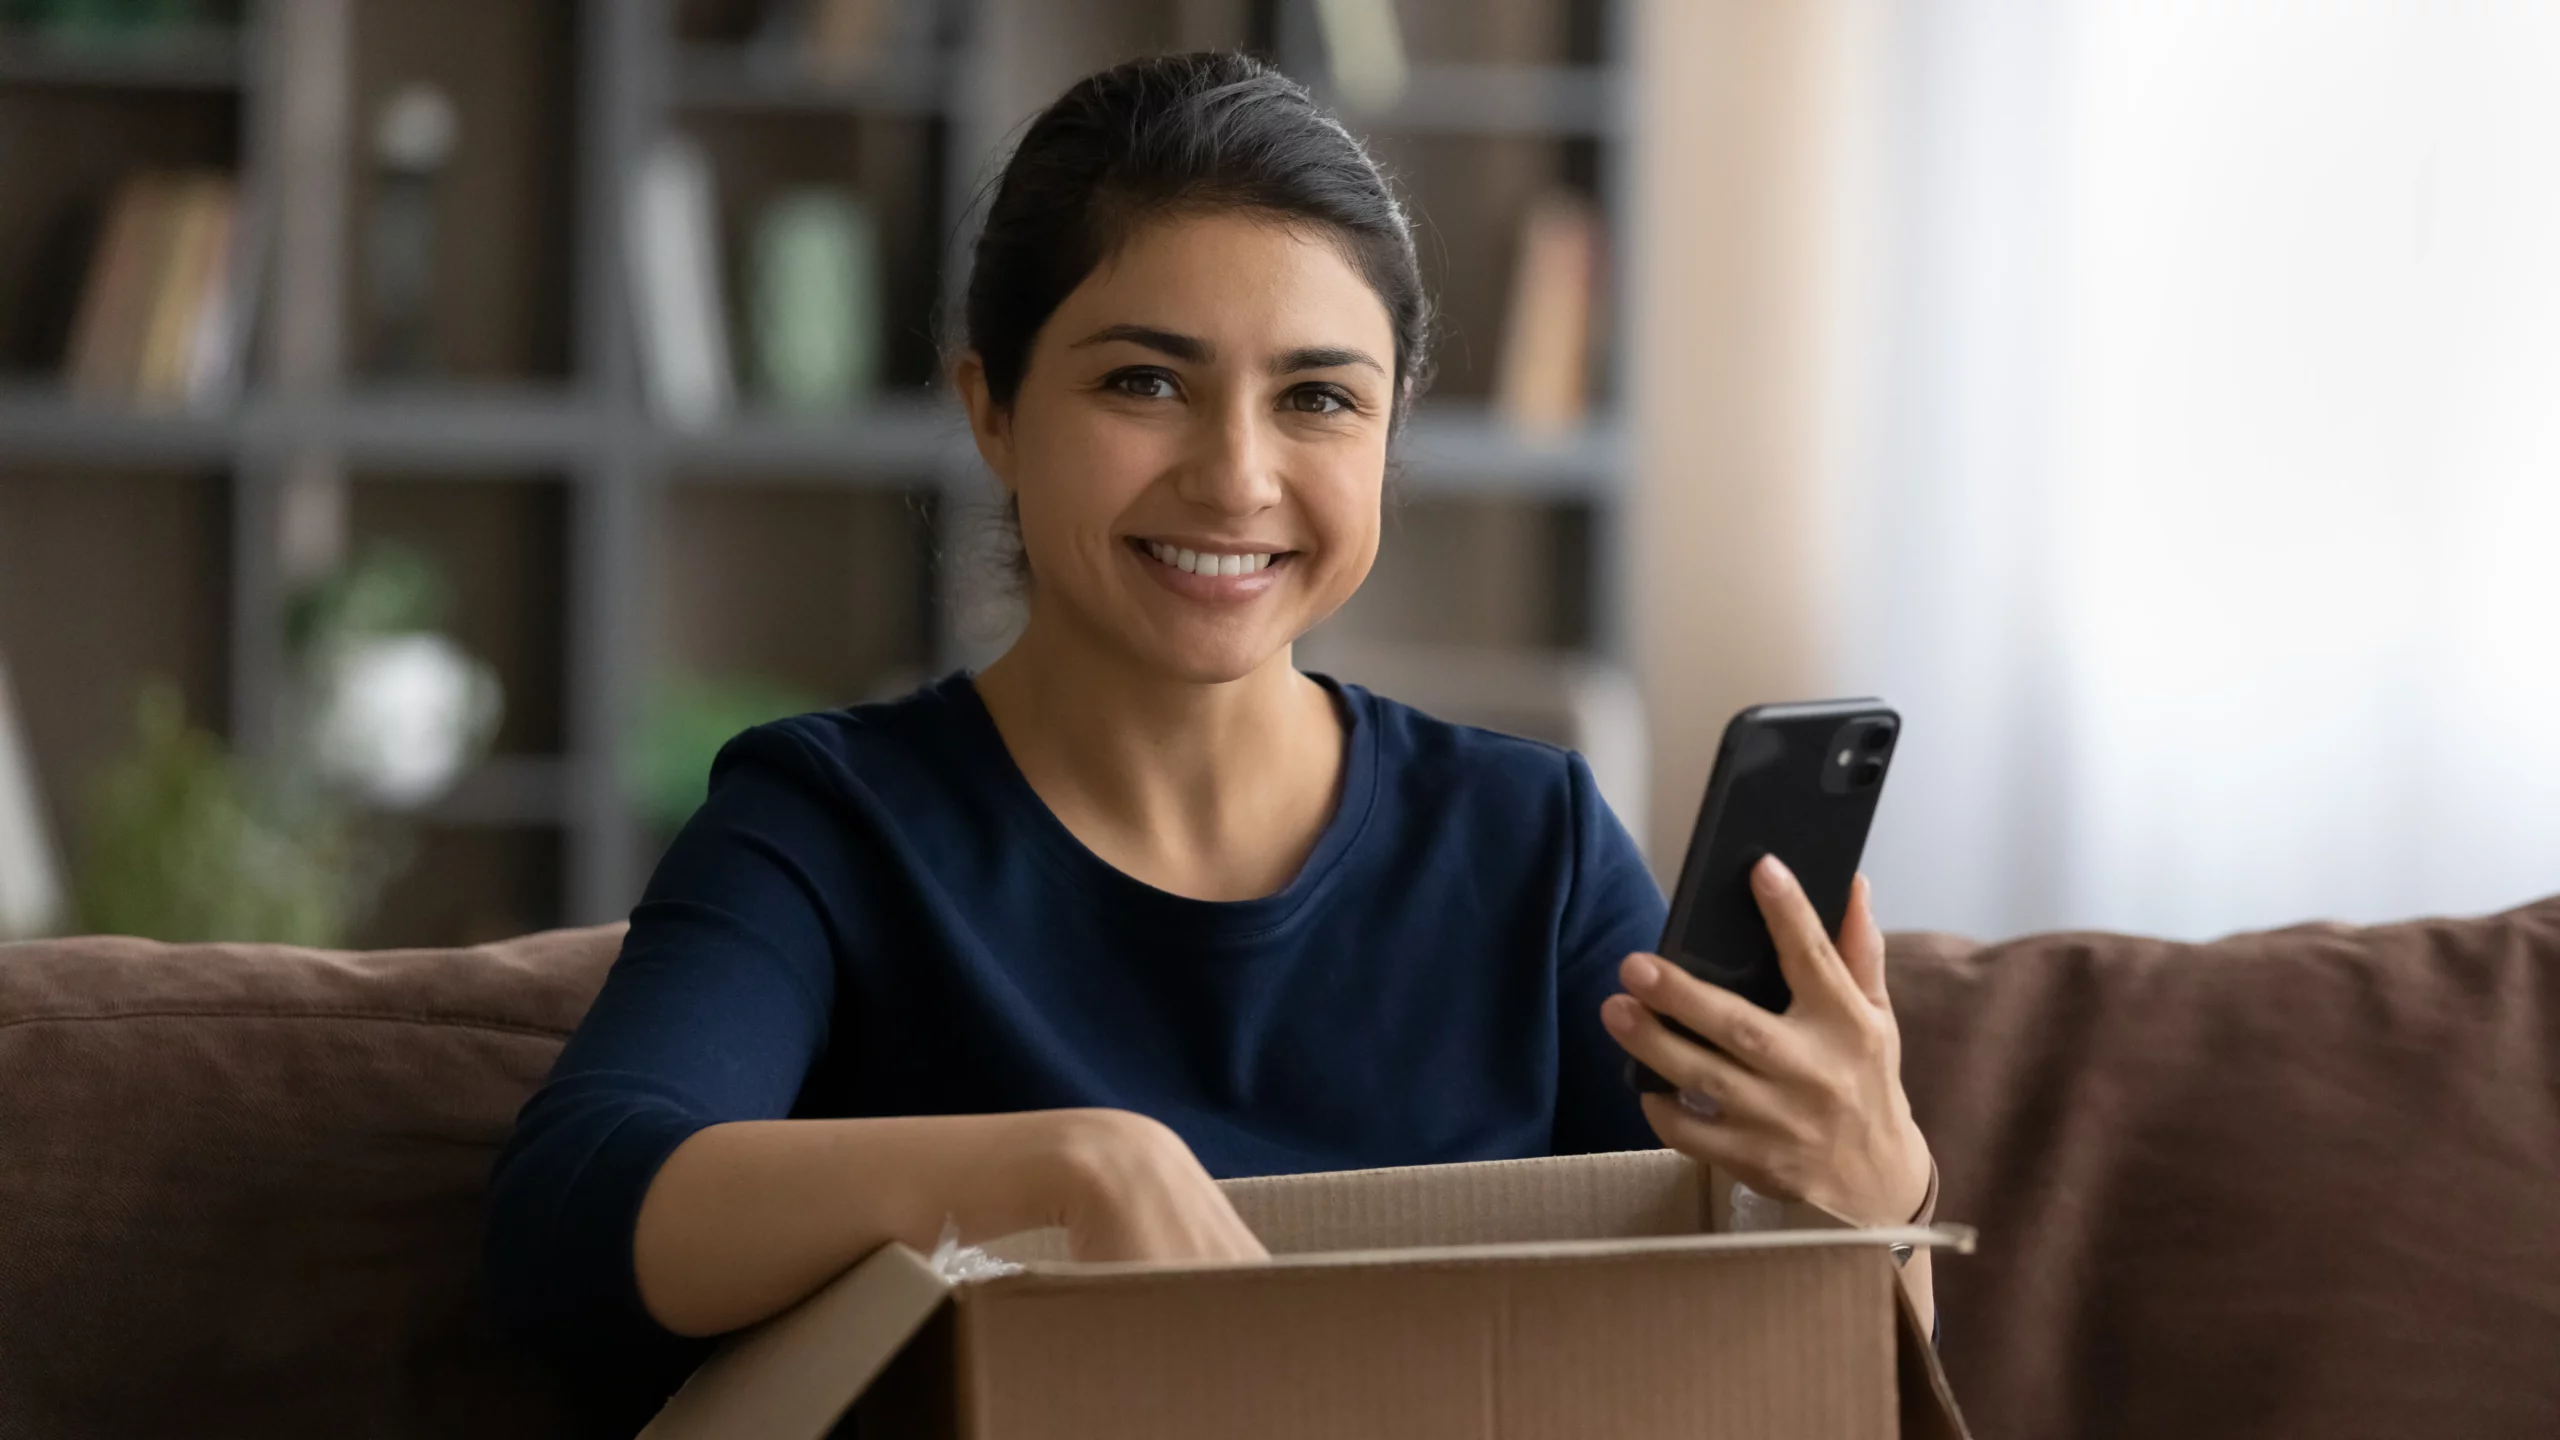 mujer sonriente sosteniendo un teléfono con la otra mano dentro de una caja de cartón abierta